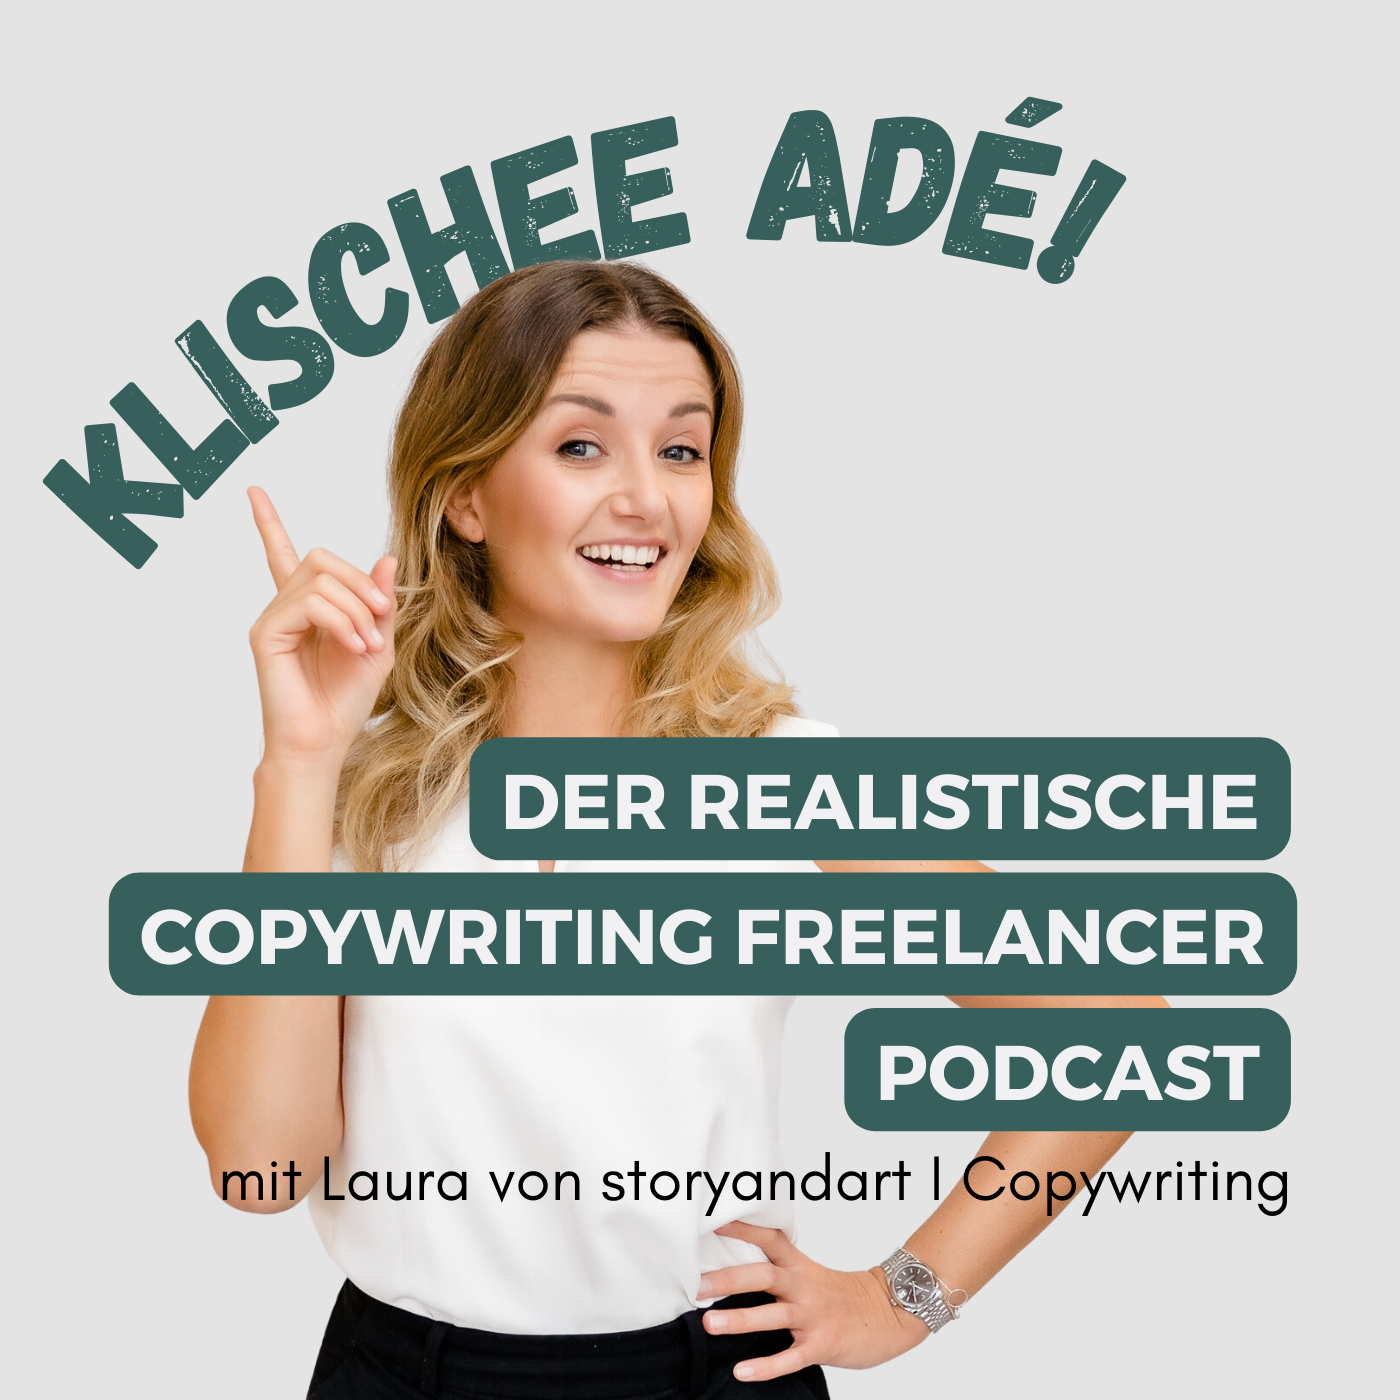 Klischee Ade! Der realistische Copywriting Freelancer Podcast